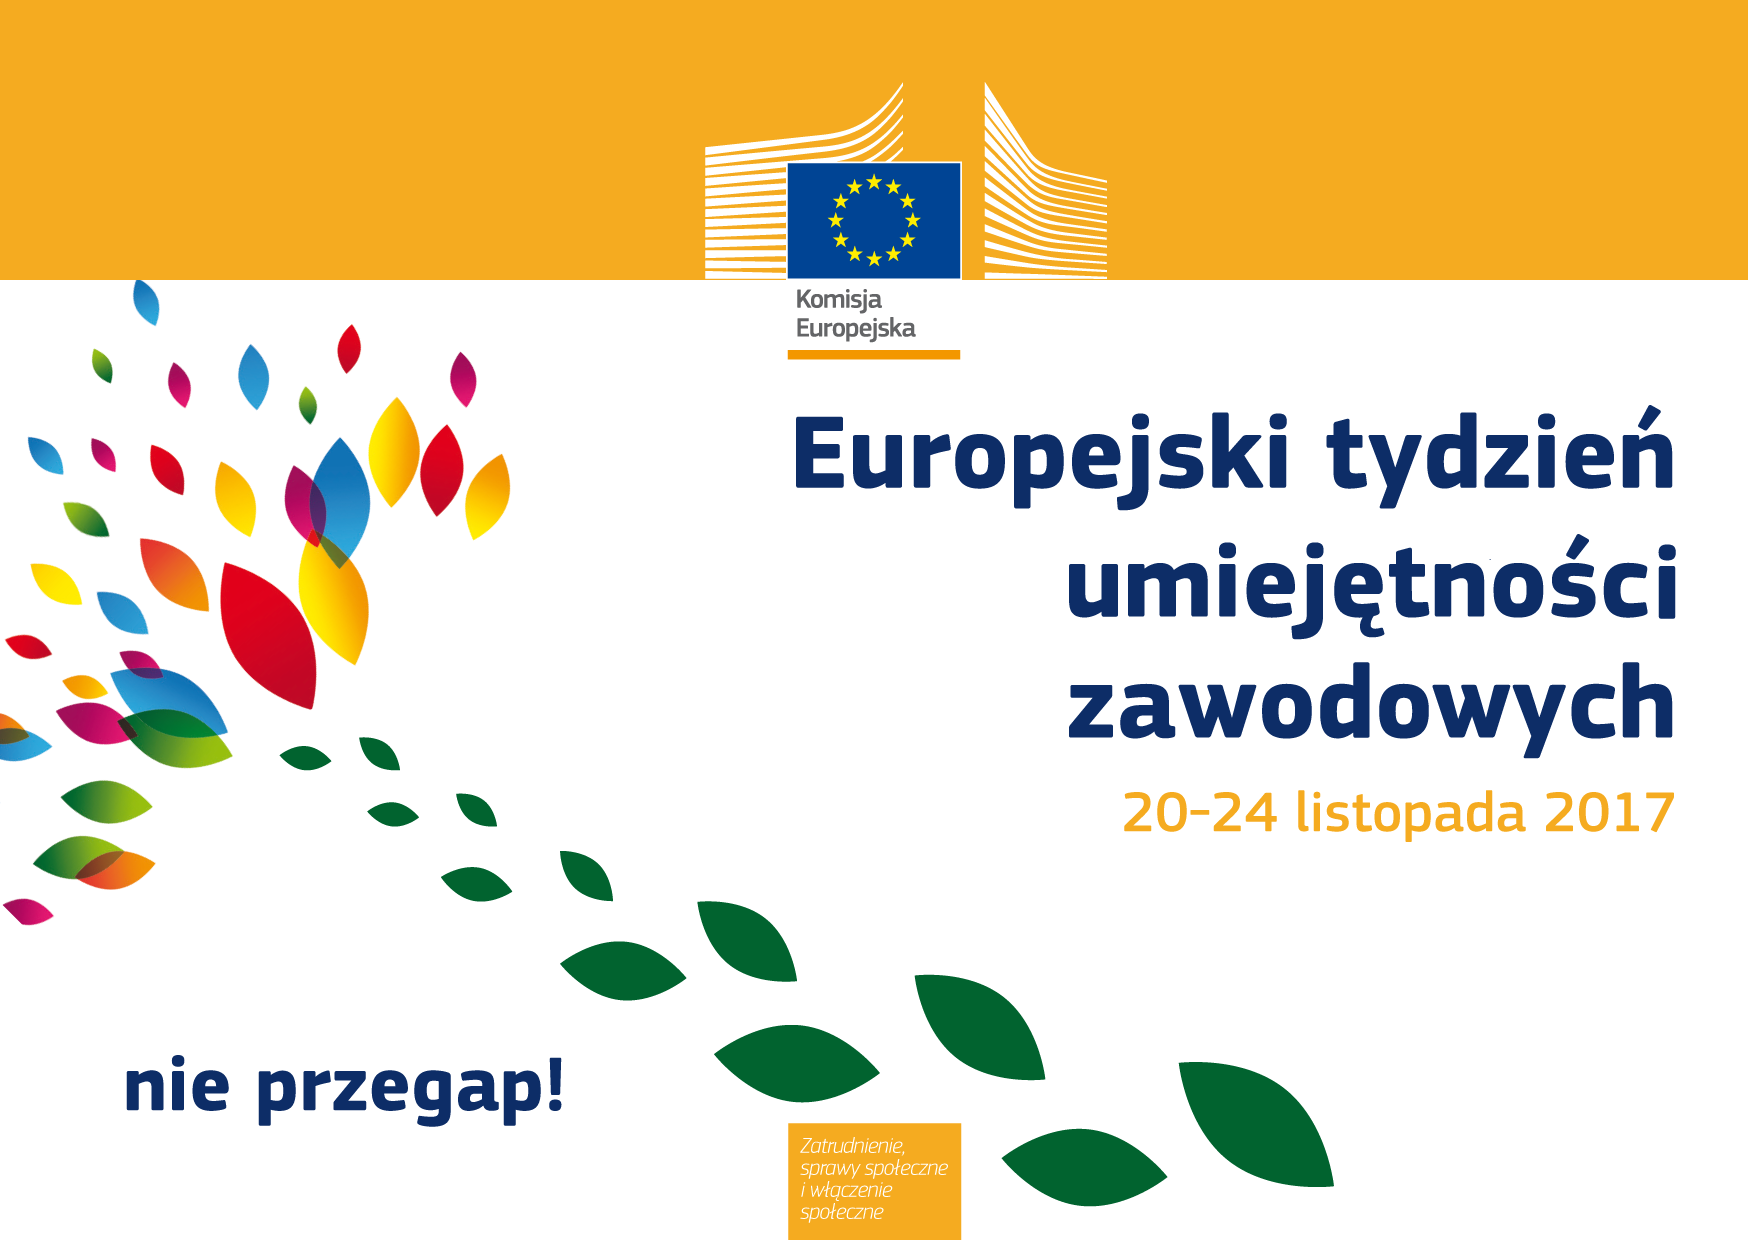 Plakat promujący Europejski Tydzień Umiejętności Zawodowych